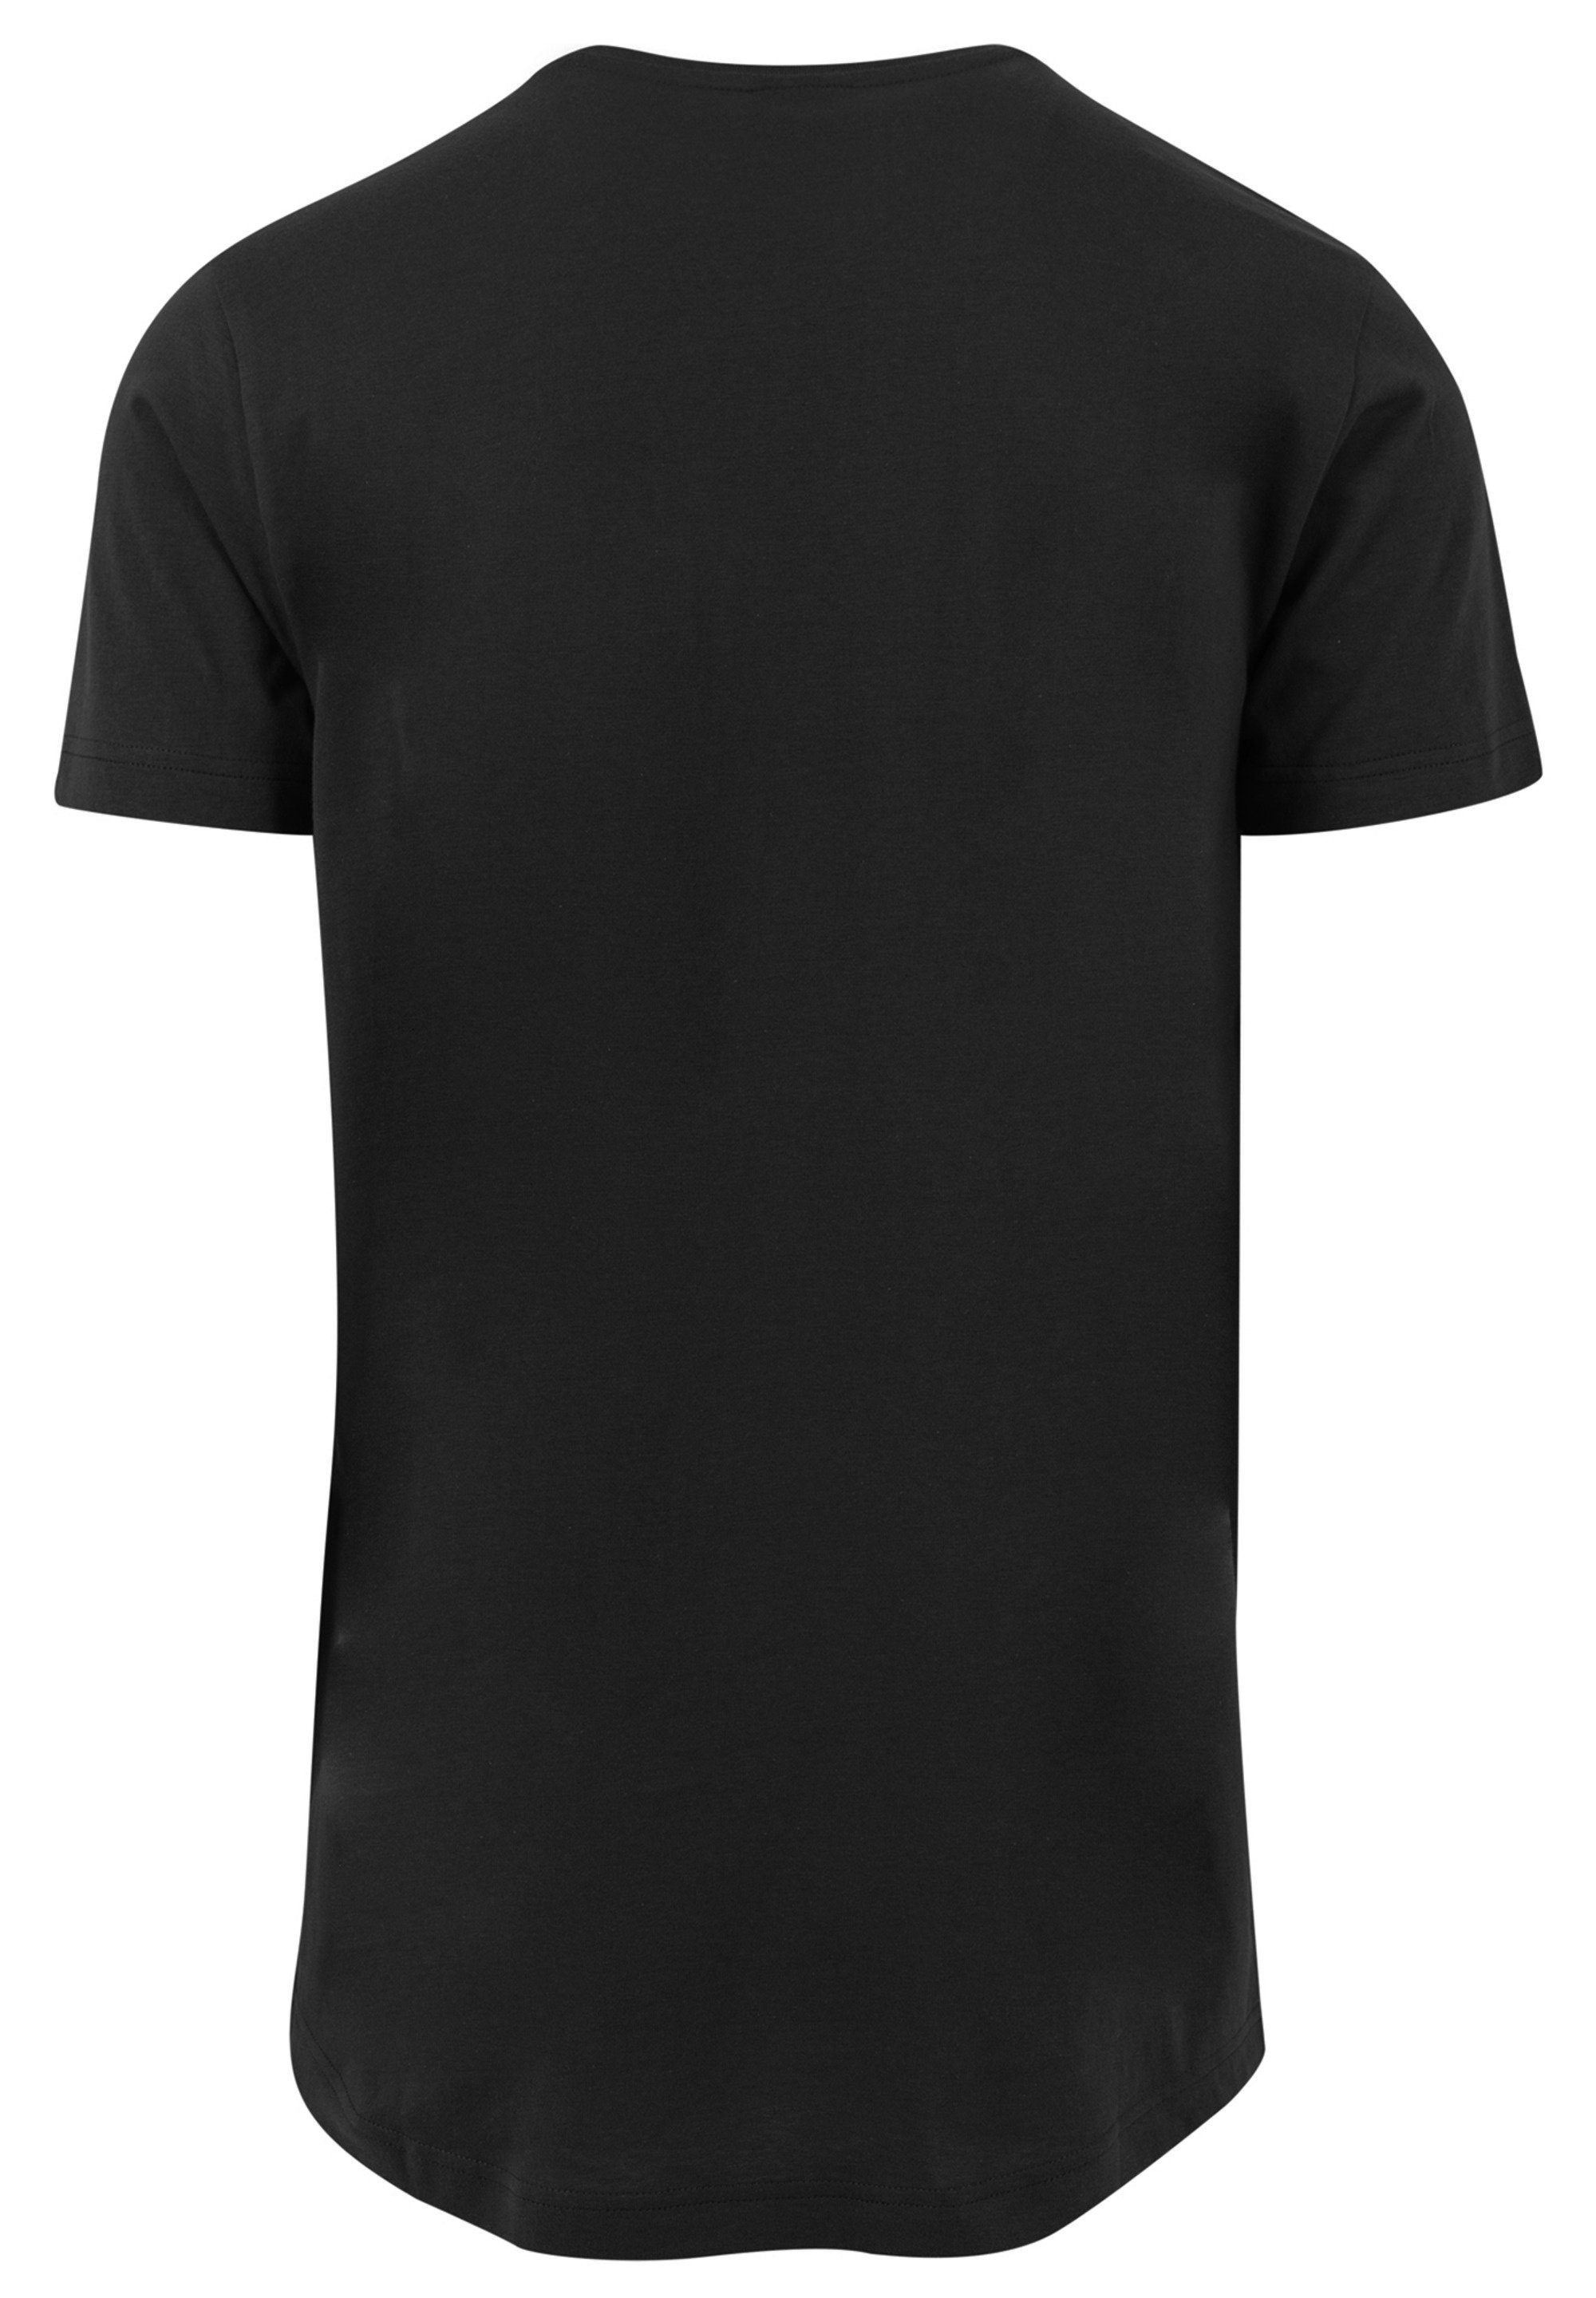 Space Shuttle Herren,Premium T-Shirt F4NT4STIC Classic Merch,Lang,Longshirt,Bedruckt NASA Black